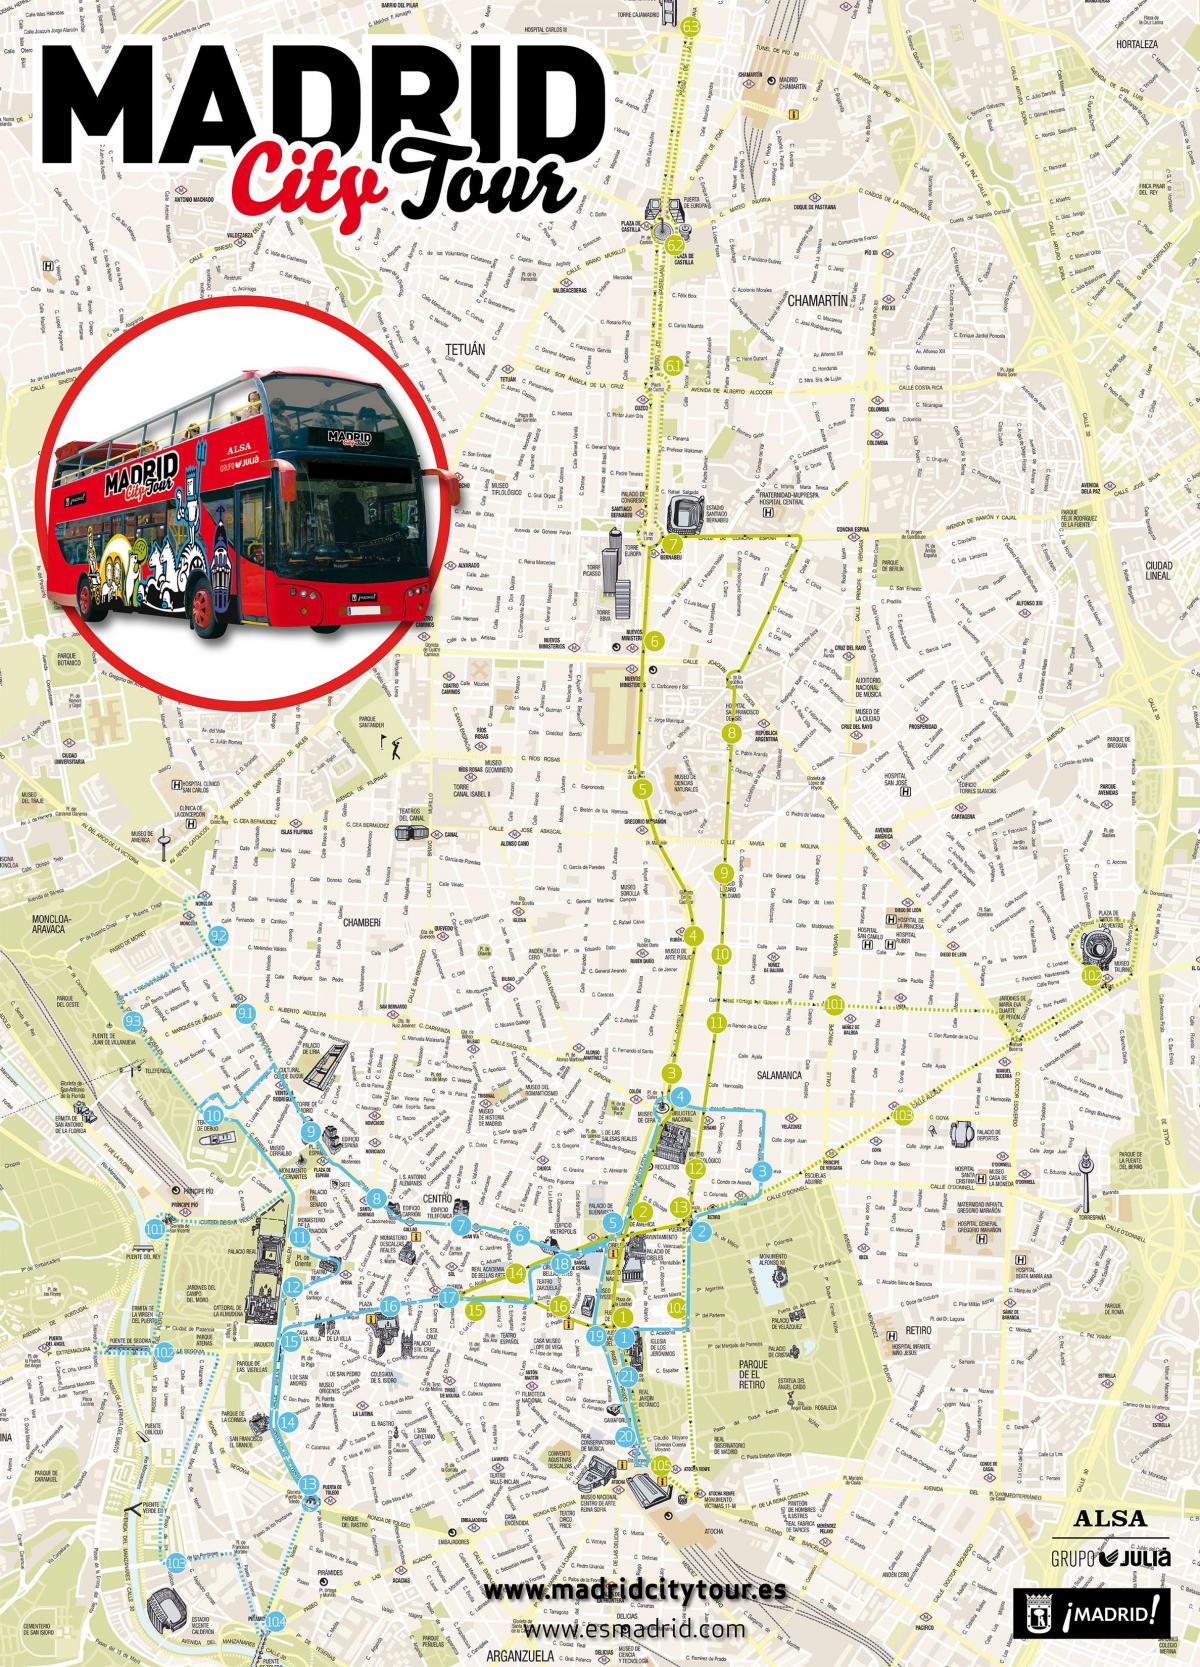 마드리드 도시의 버스 투어 지도